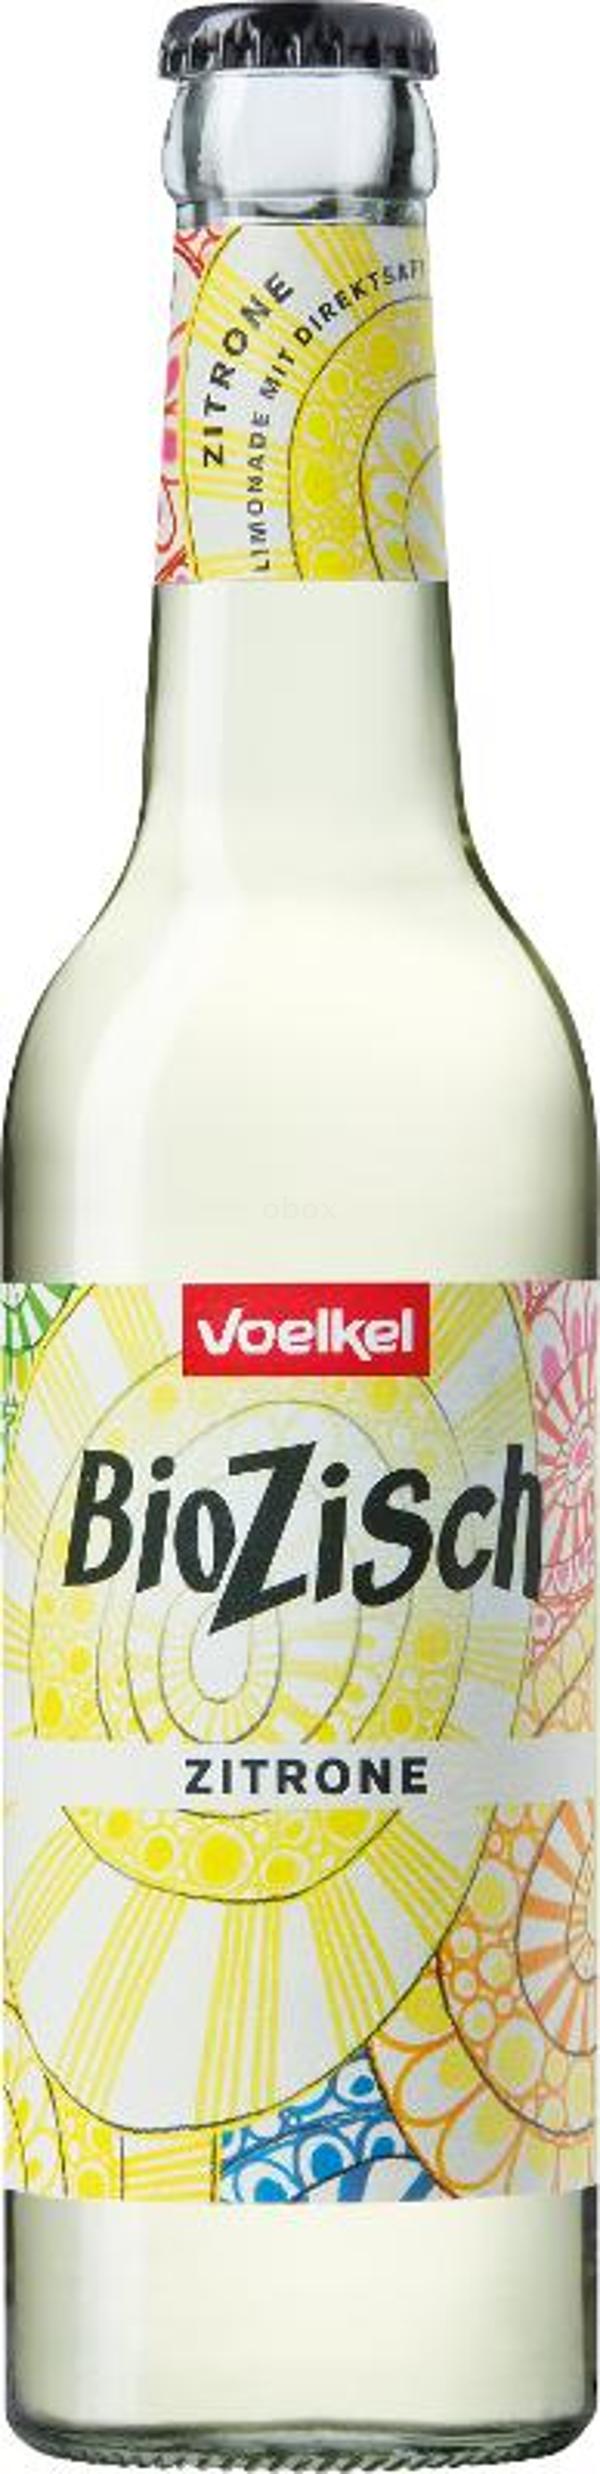 Produktfoto zu Bio Zisch Zitrone 0,33 l